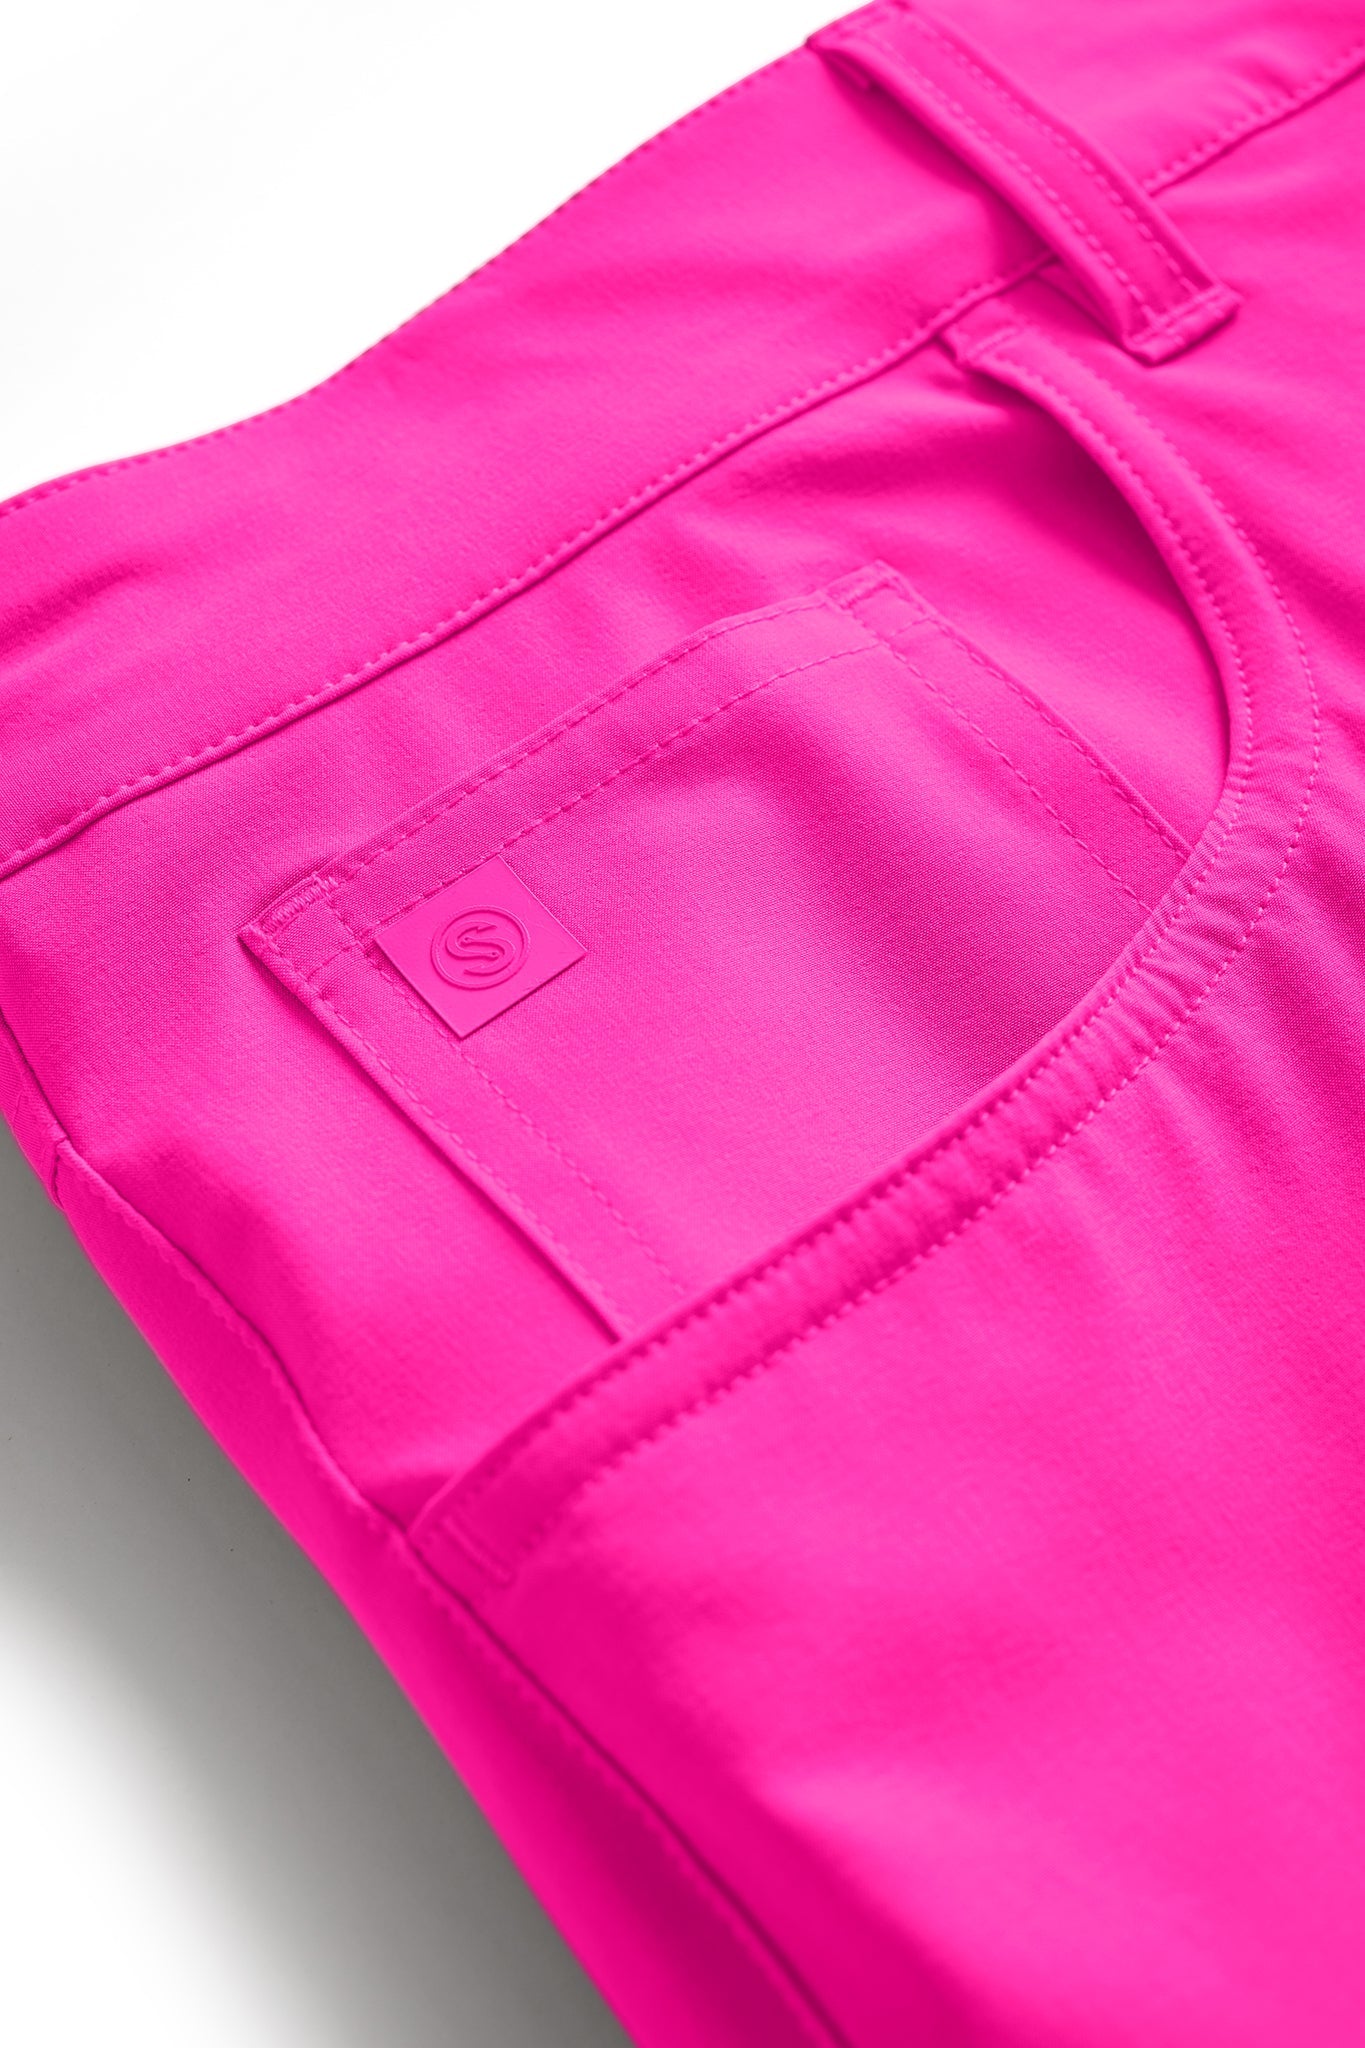 All Tides Pants - 5 Pockets (Seasonal Colors)